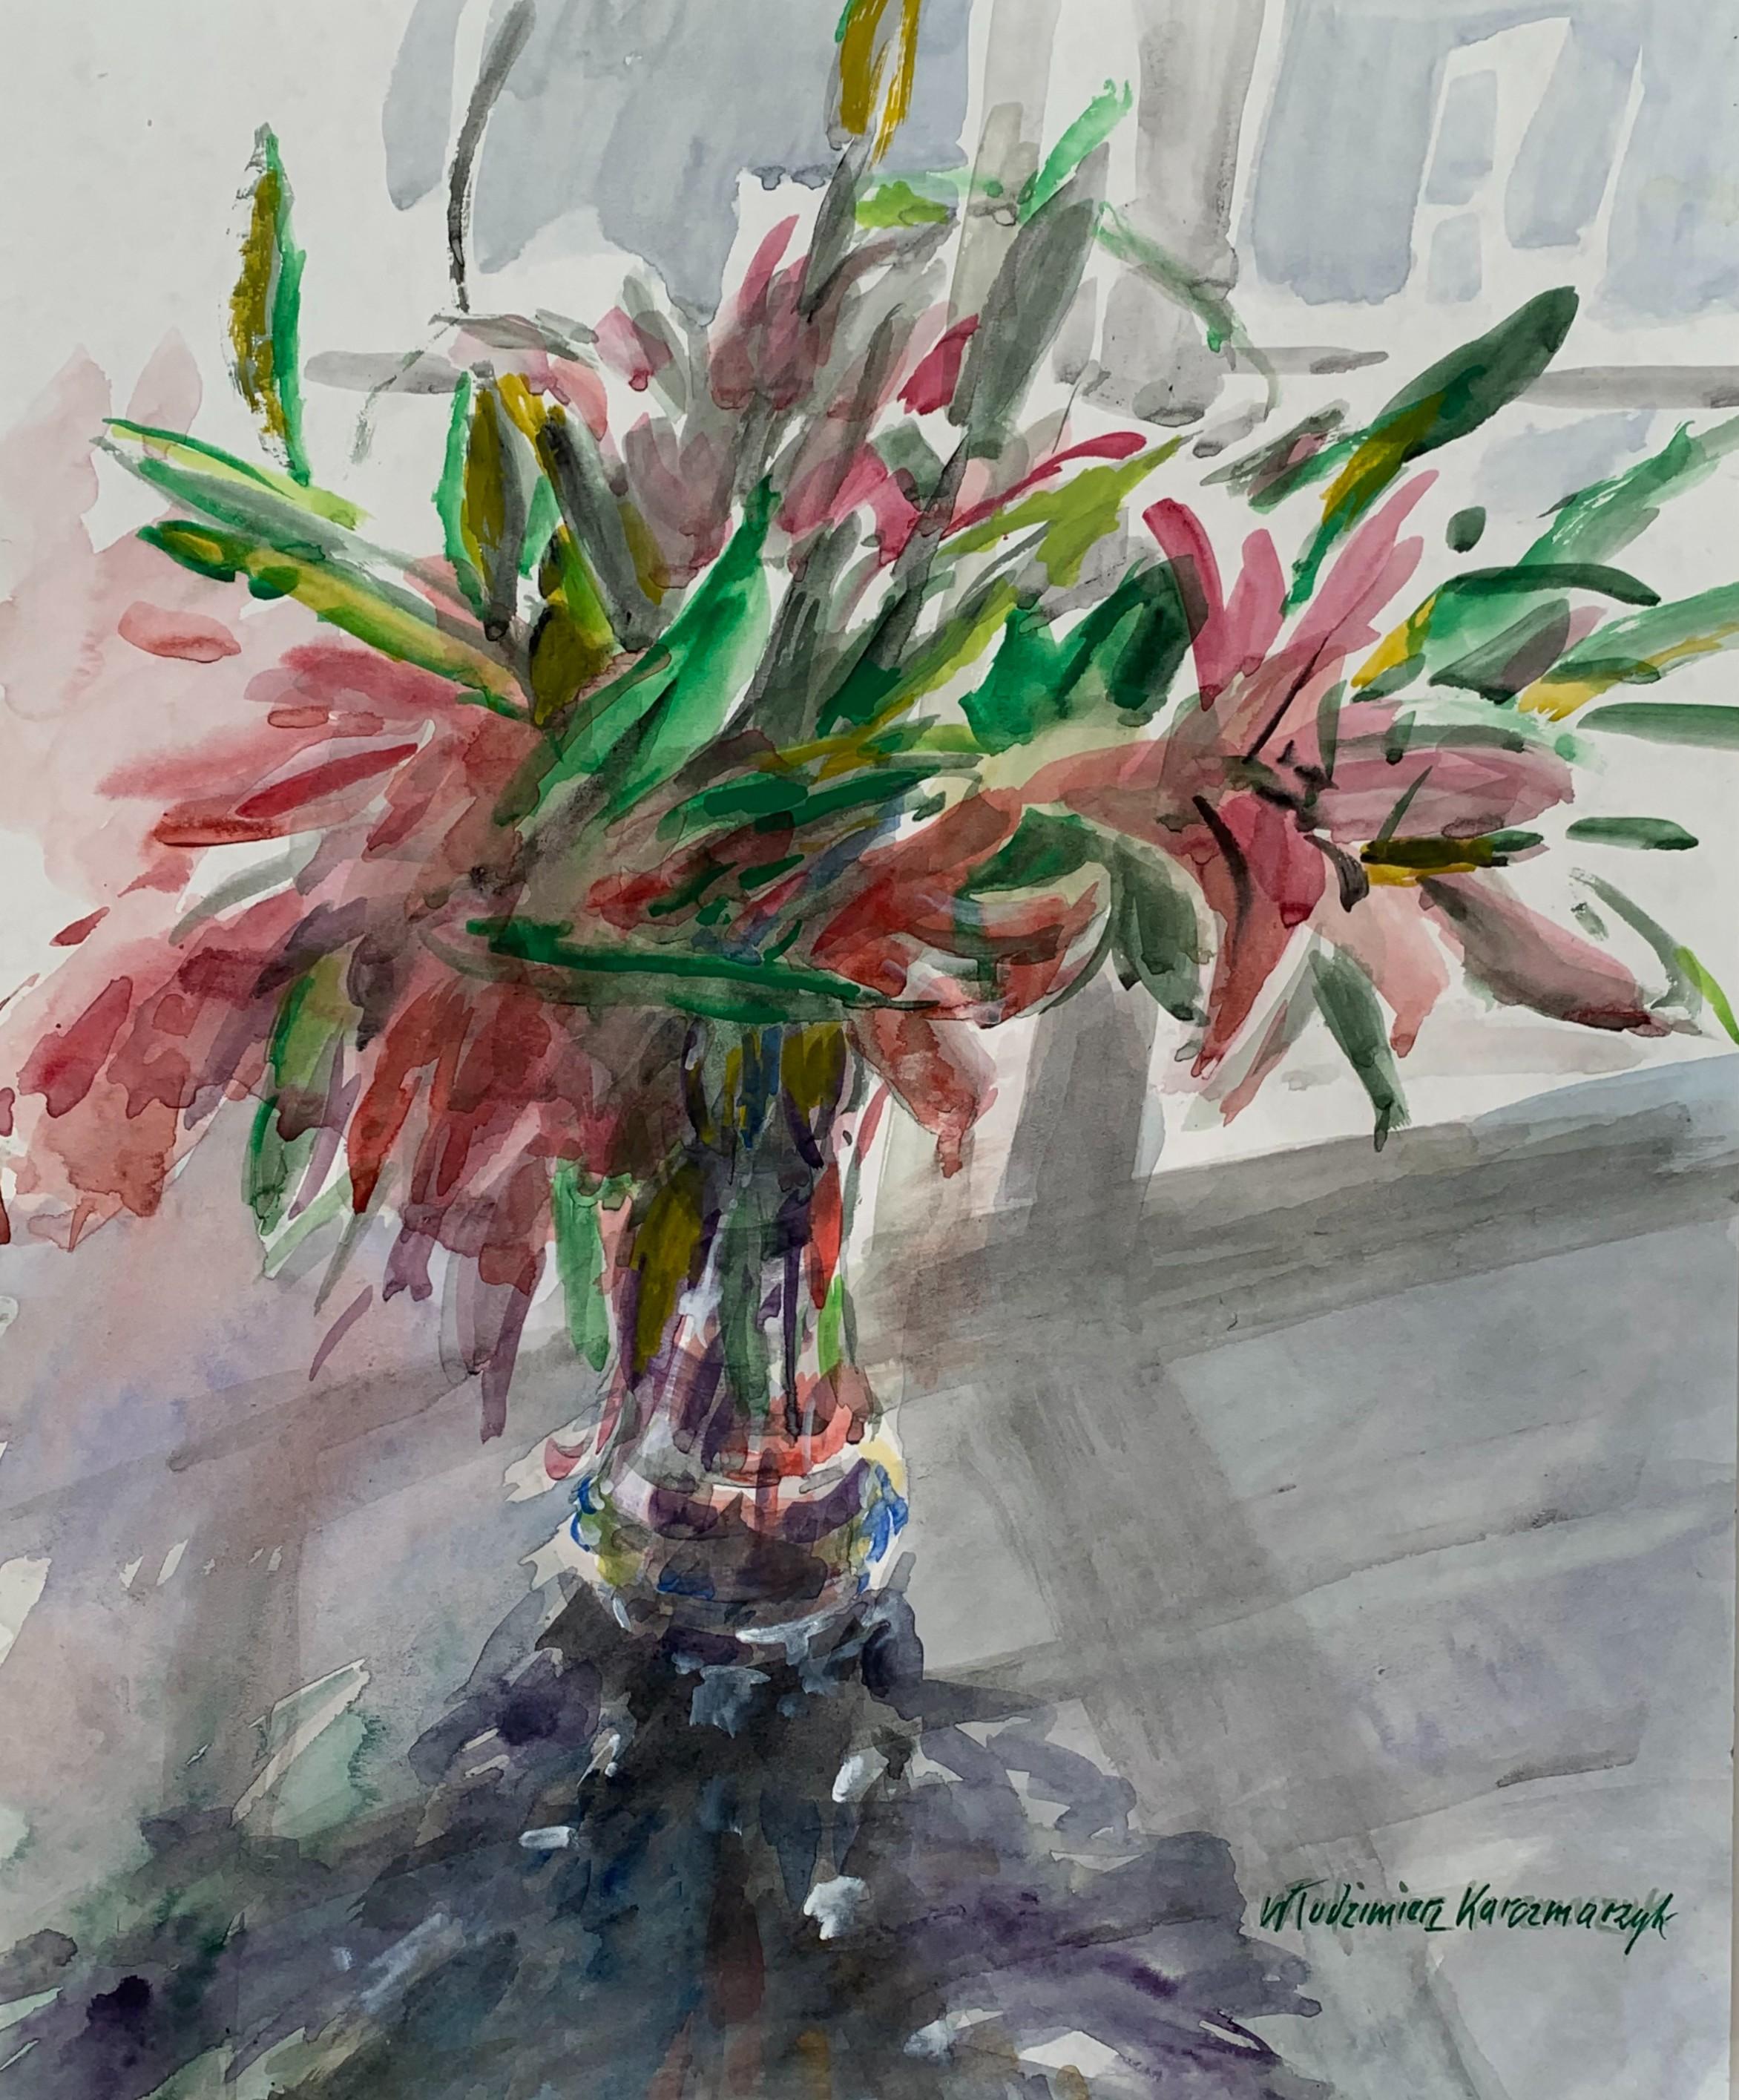 Włodzimierz Karczmarzyk Landscape Art - Lilies - 21 century Figurative Watercolor painting, Still life, Flowers